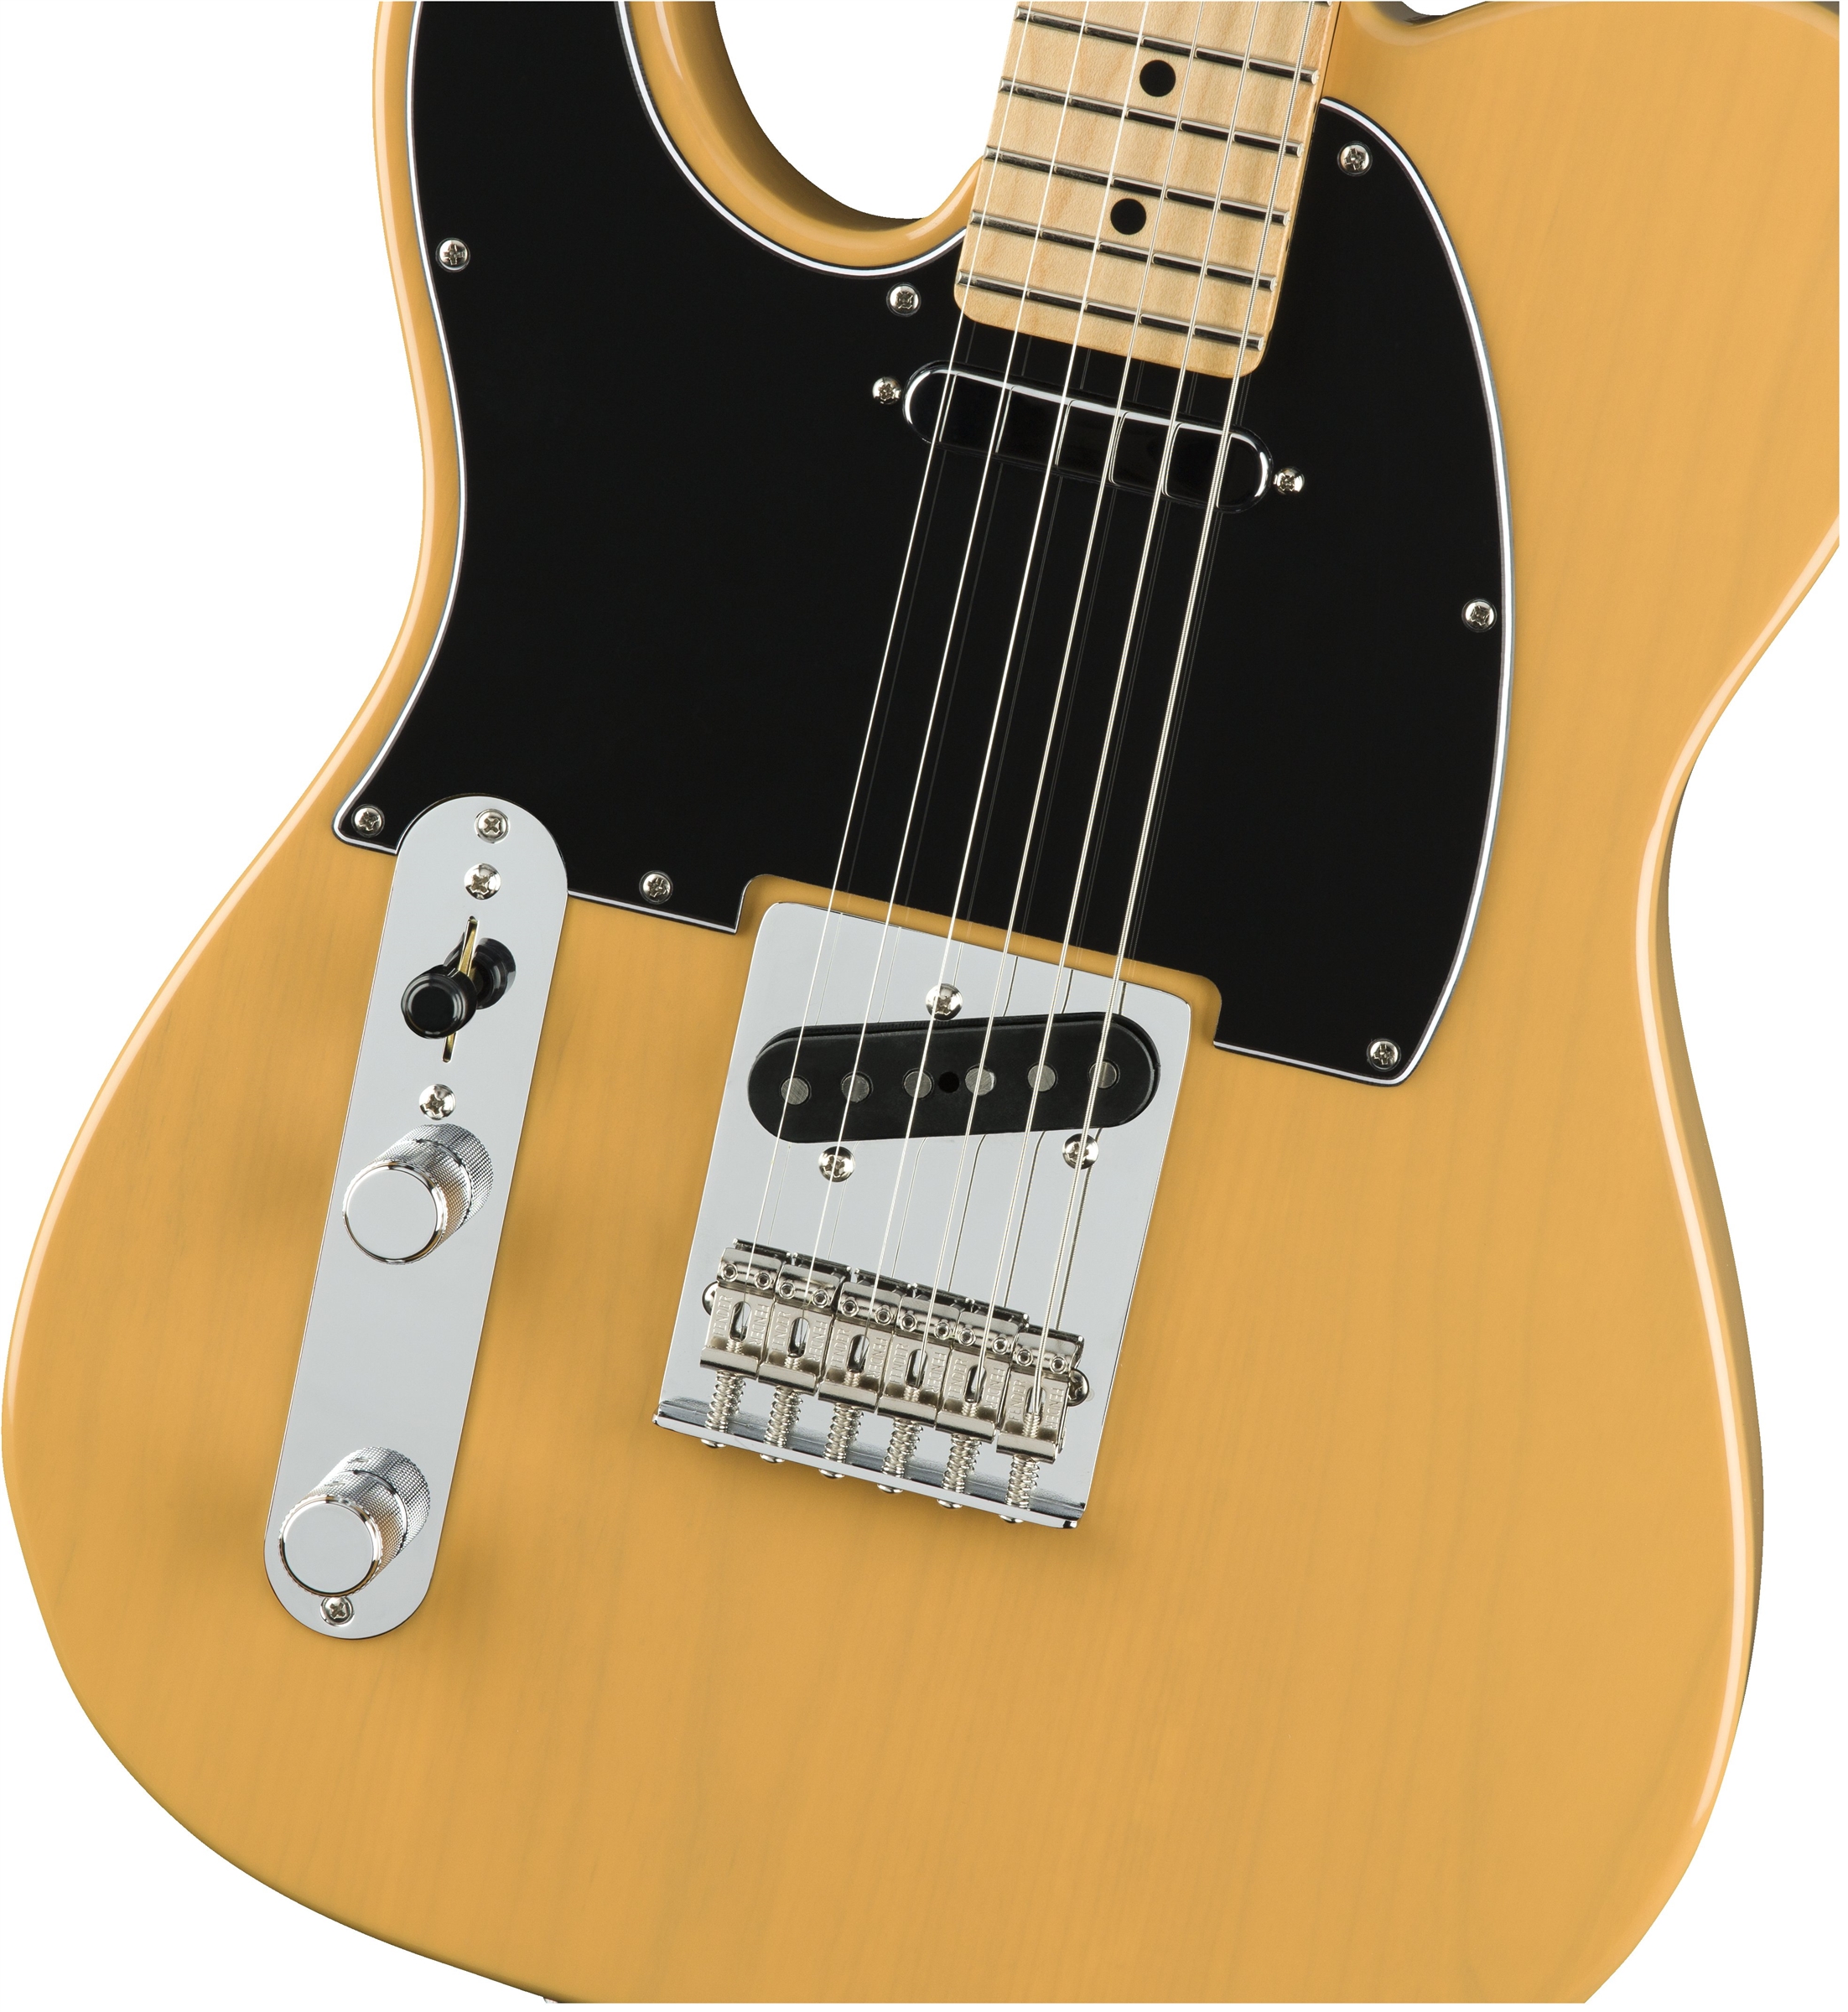 Fender Tele Player Lh Gaucher Mex 2s Mn - Butterscotch Blonde - Guitarra electrica para zurdos - Variation 2